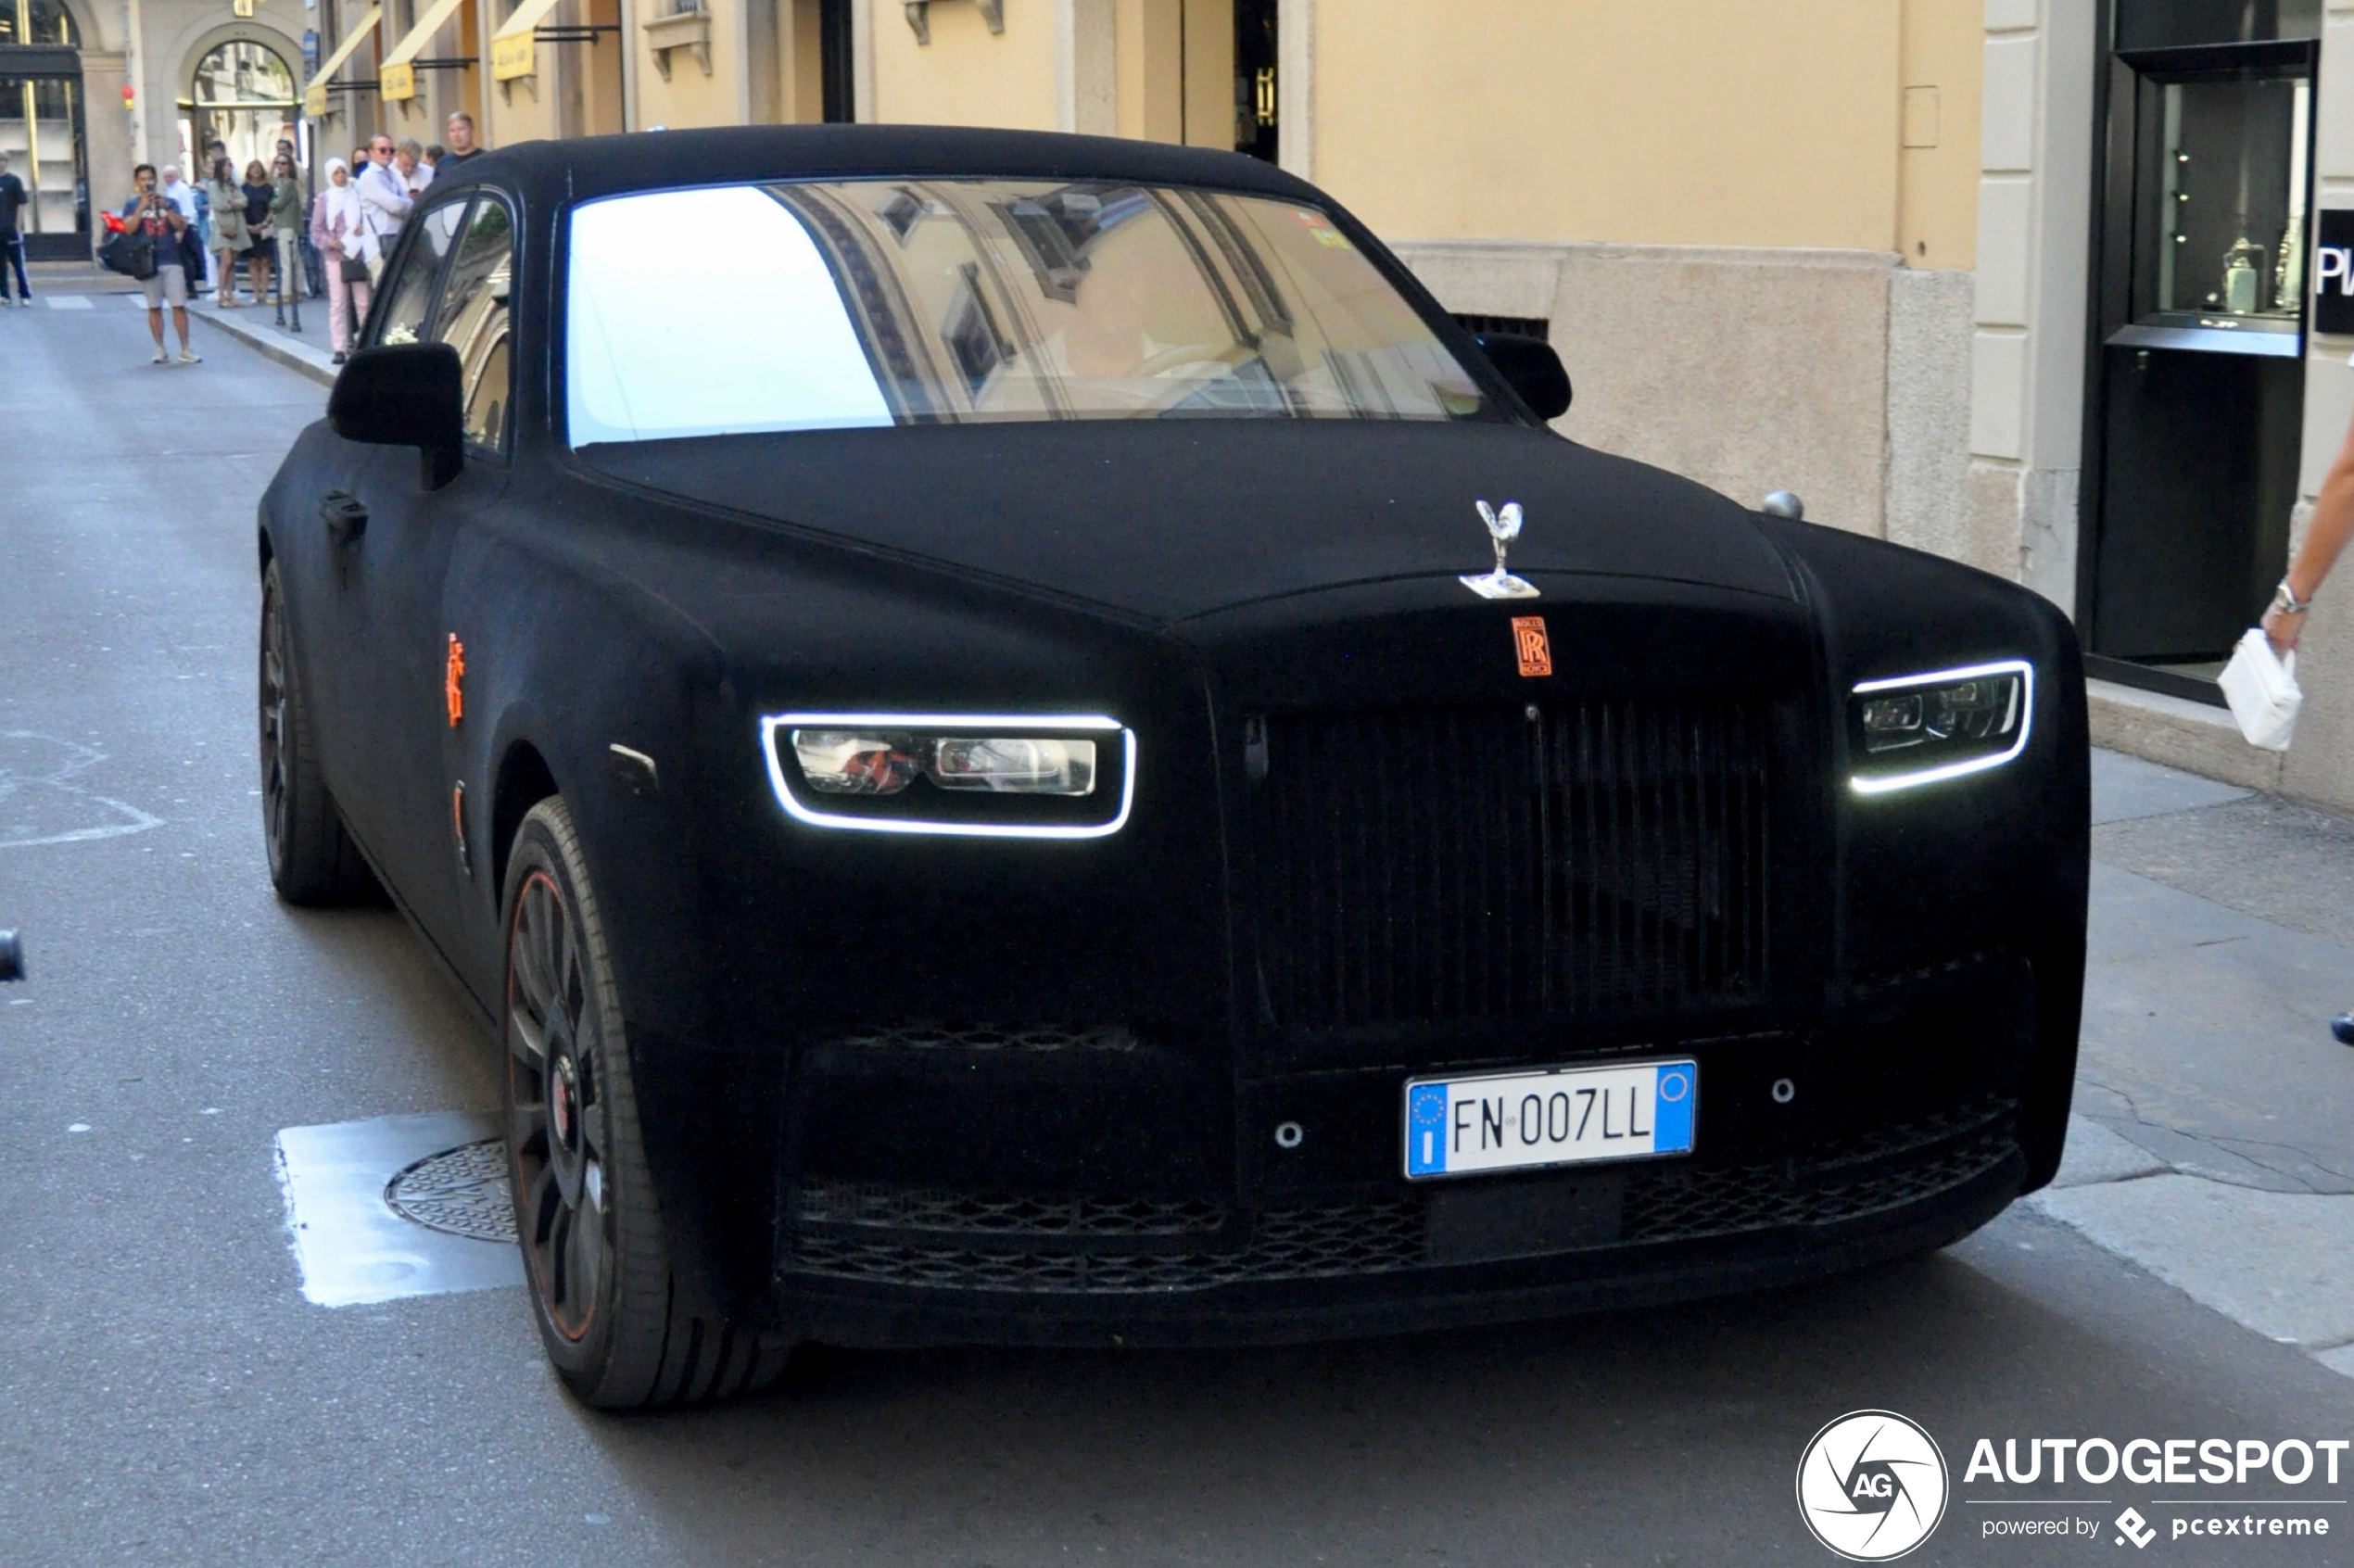 Velvet wrap doesn't suit Rolls-Royce Phantom